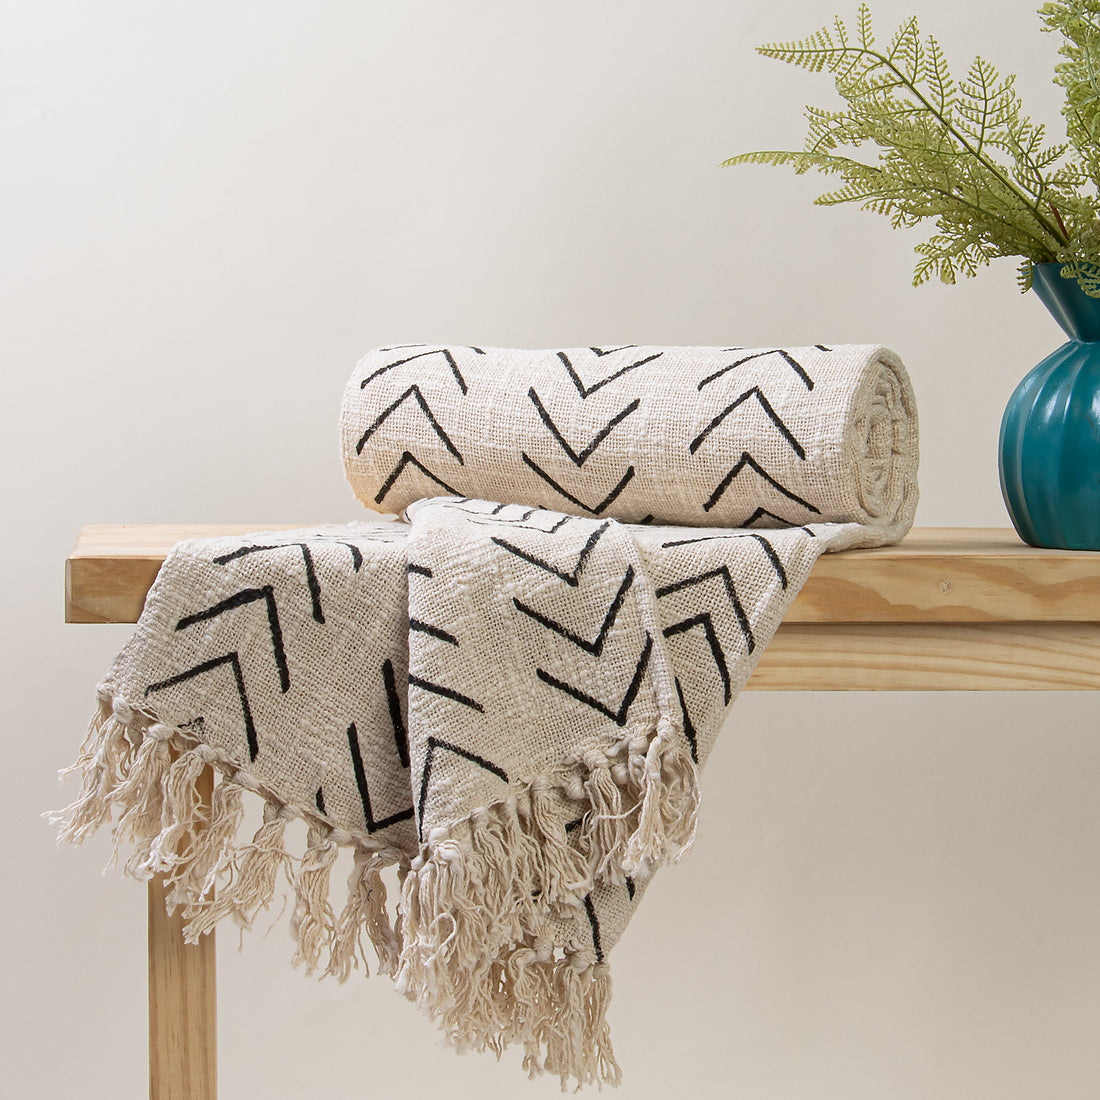 Black Stripes Print Throw Blanket For Living Room Decor Online